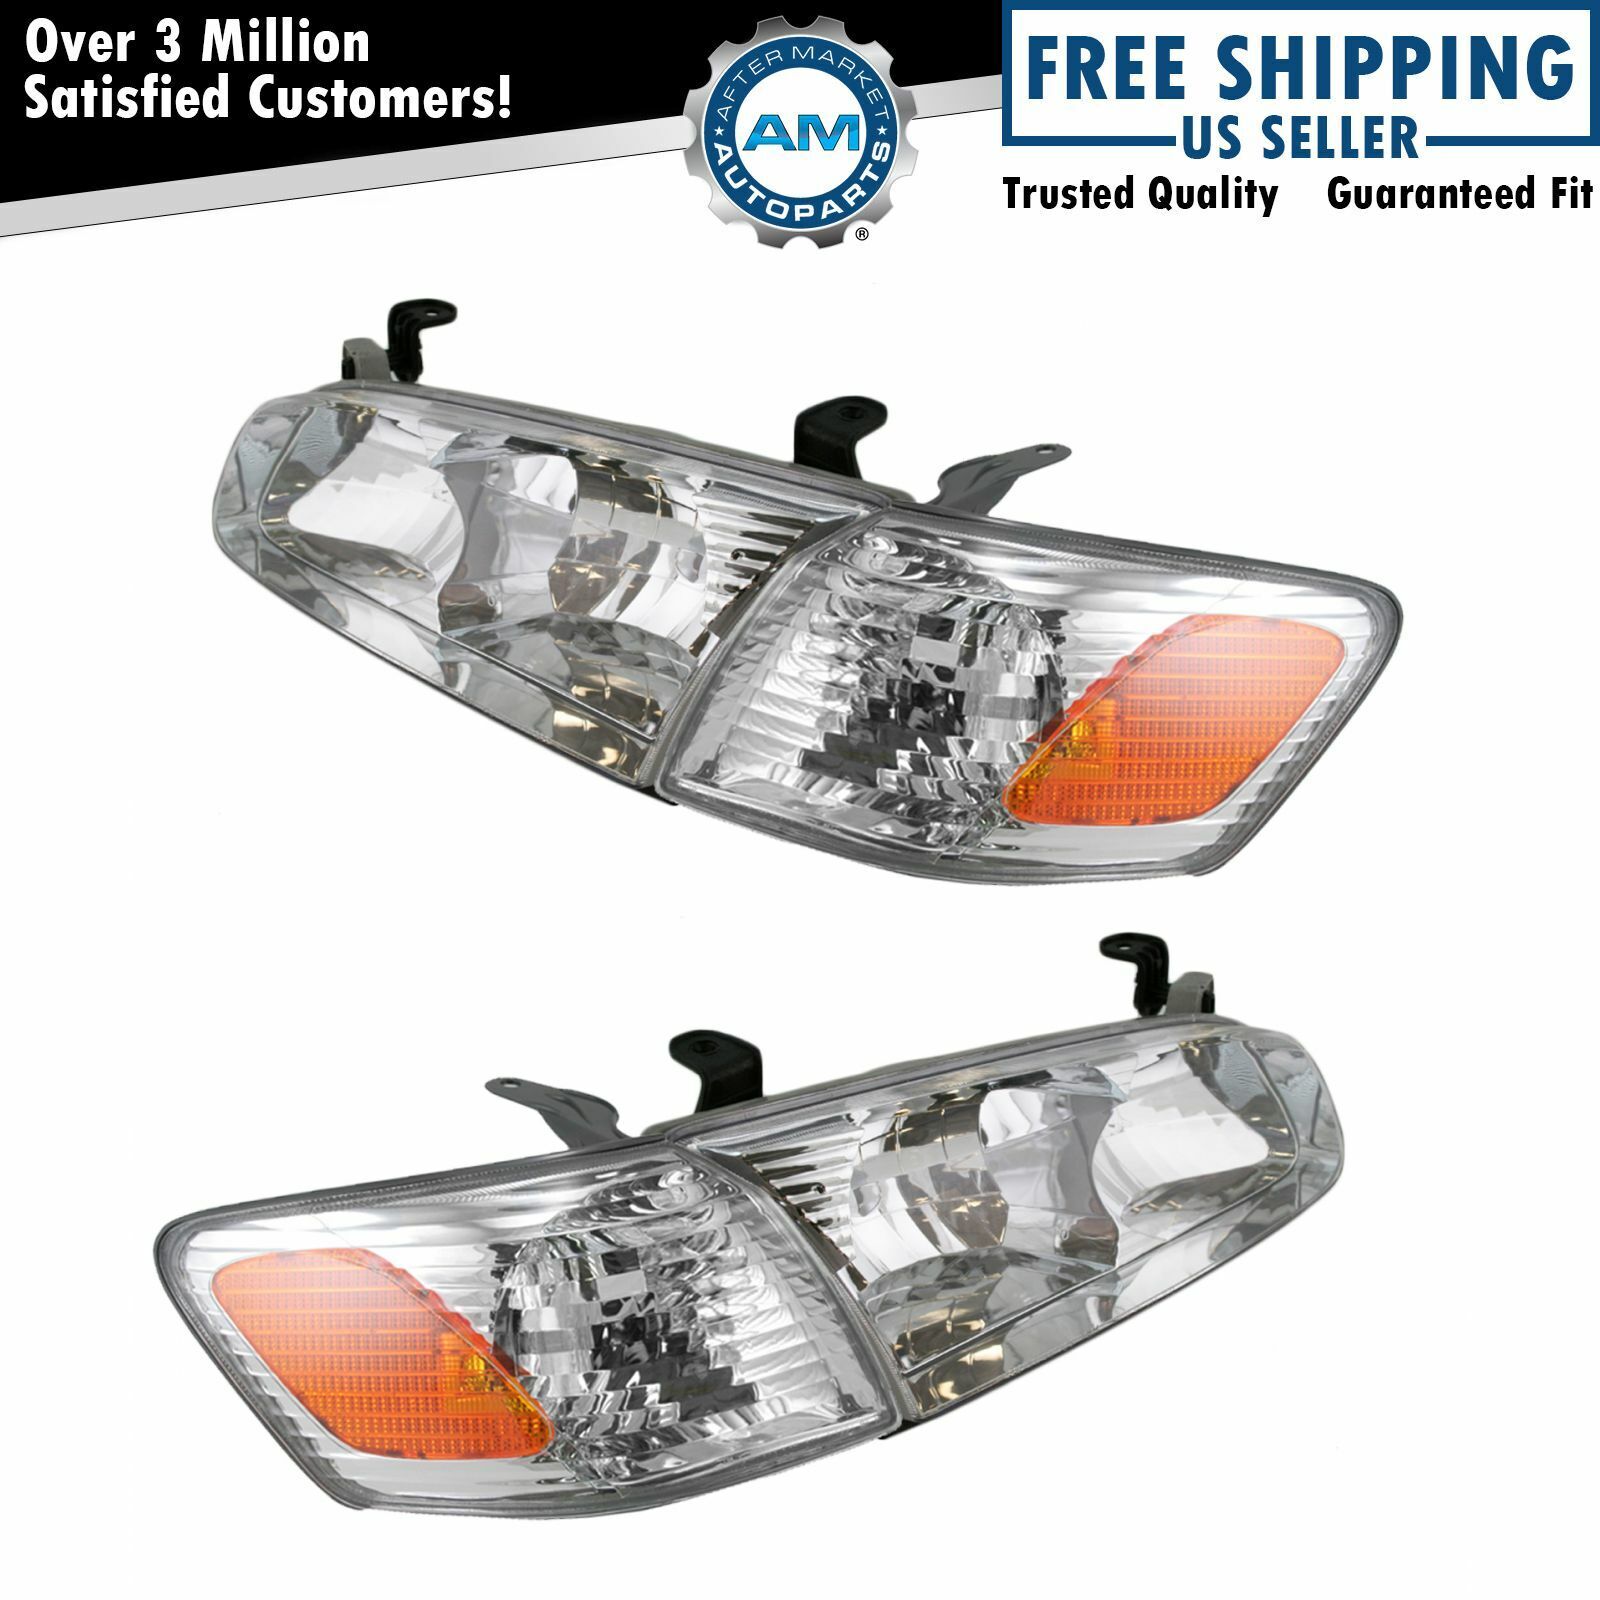 Headlight Headlamp Corner Light Lamp Kit Set of 4 for 00-01 Toyota Camry NEW